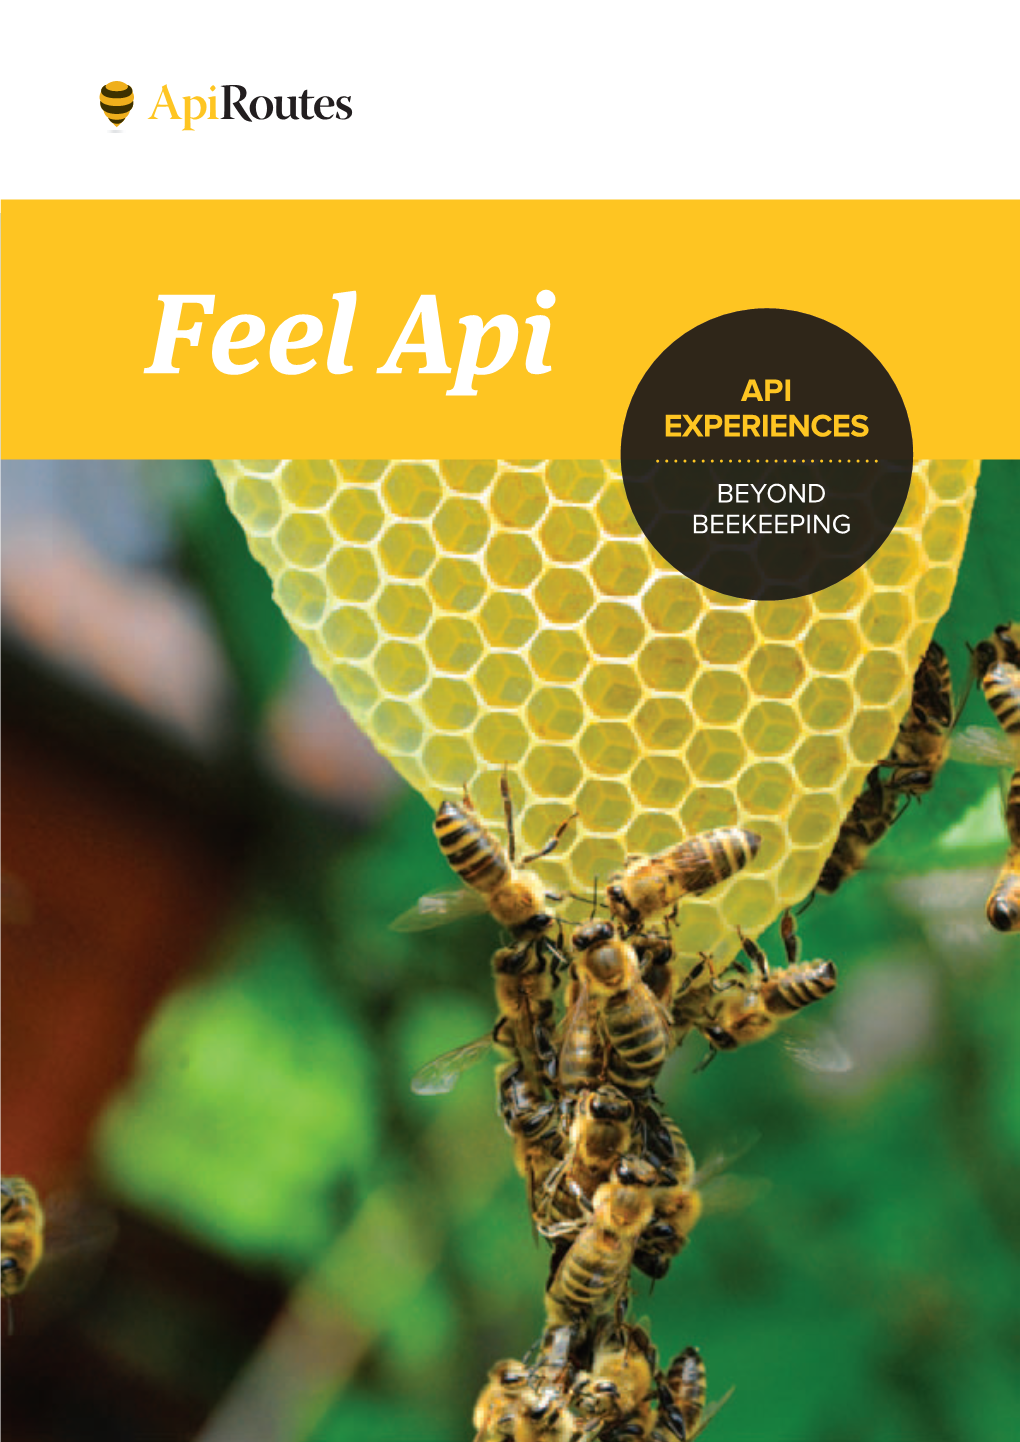 Feel Api API EXPERIENCES